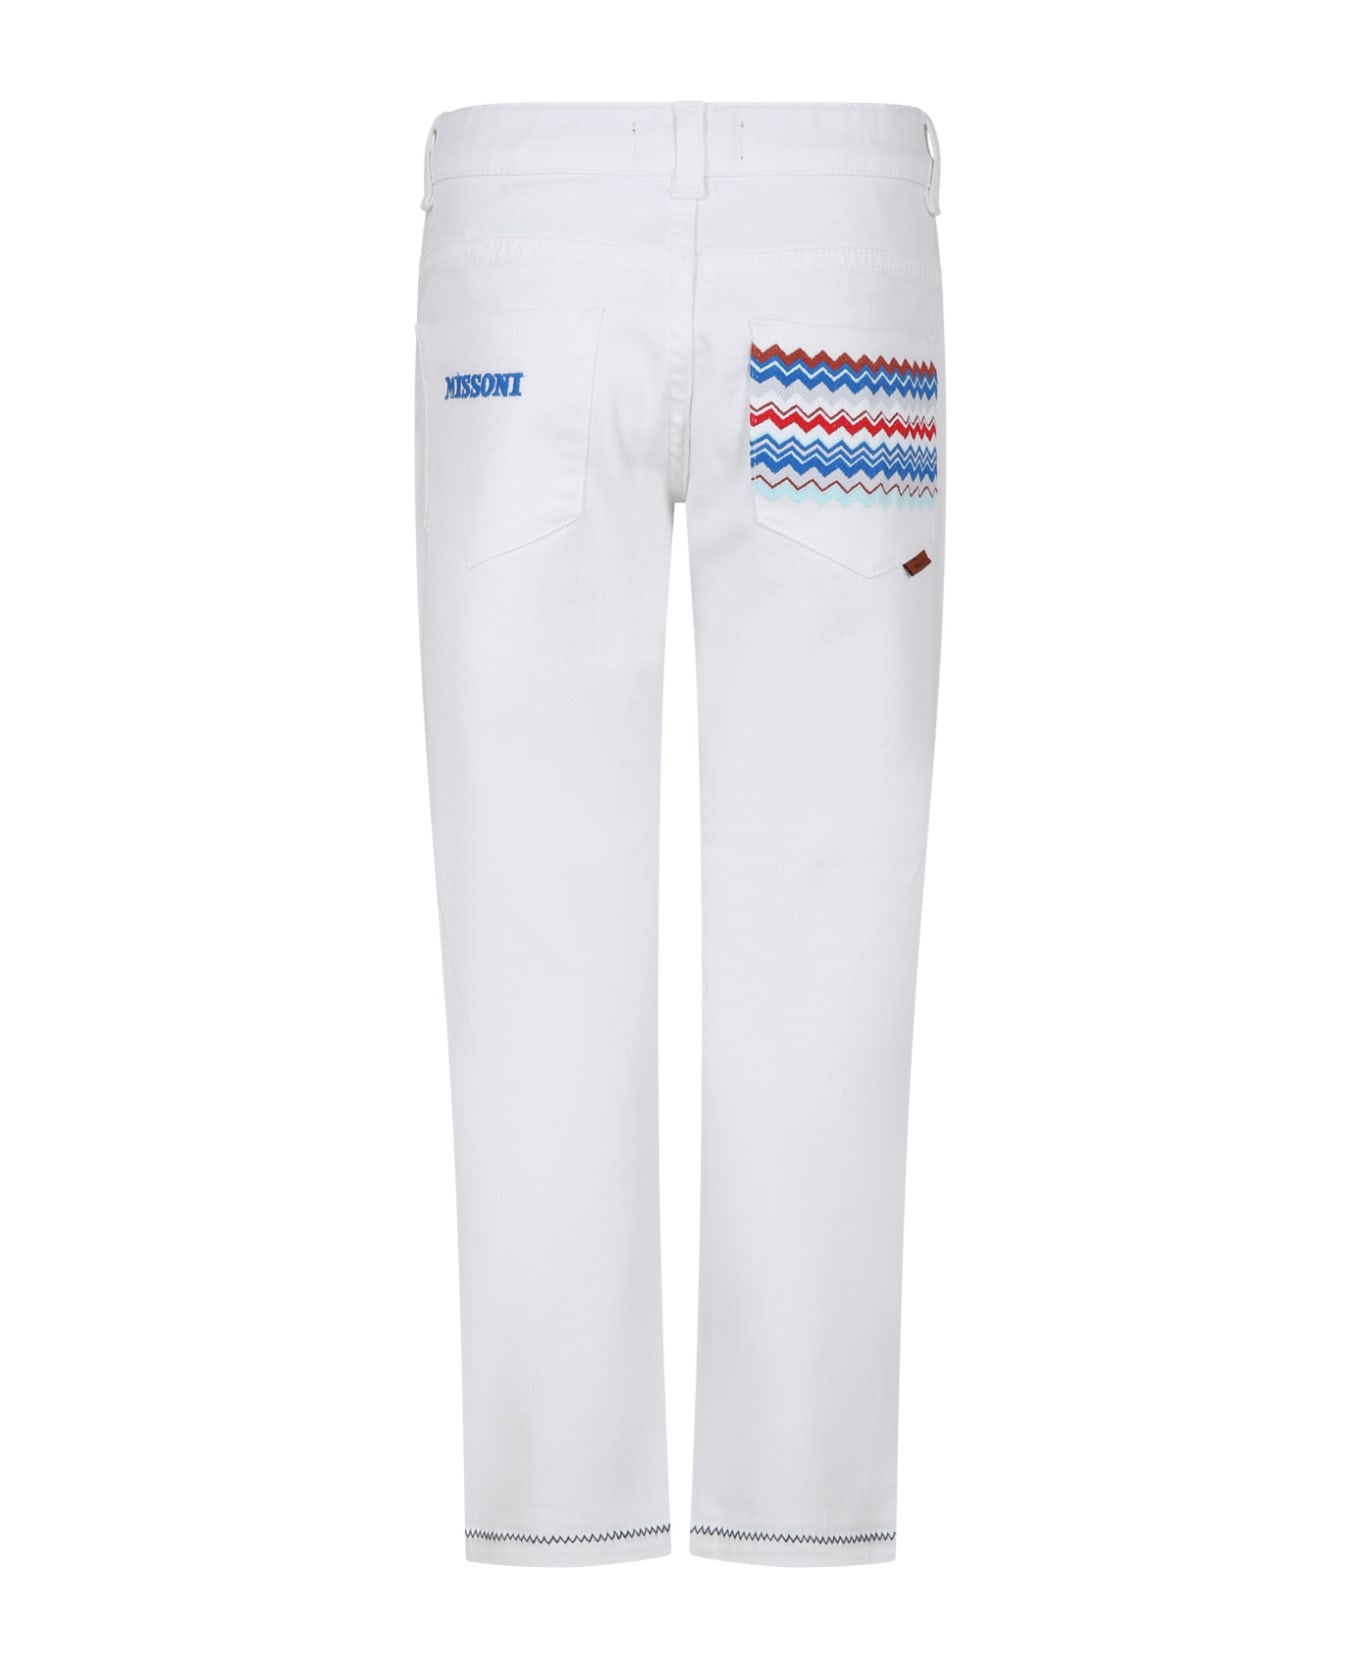 Missoni White Jeans For Girl - White